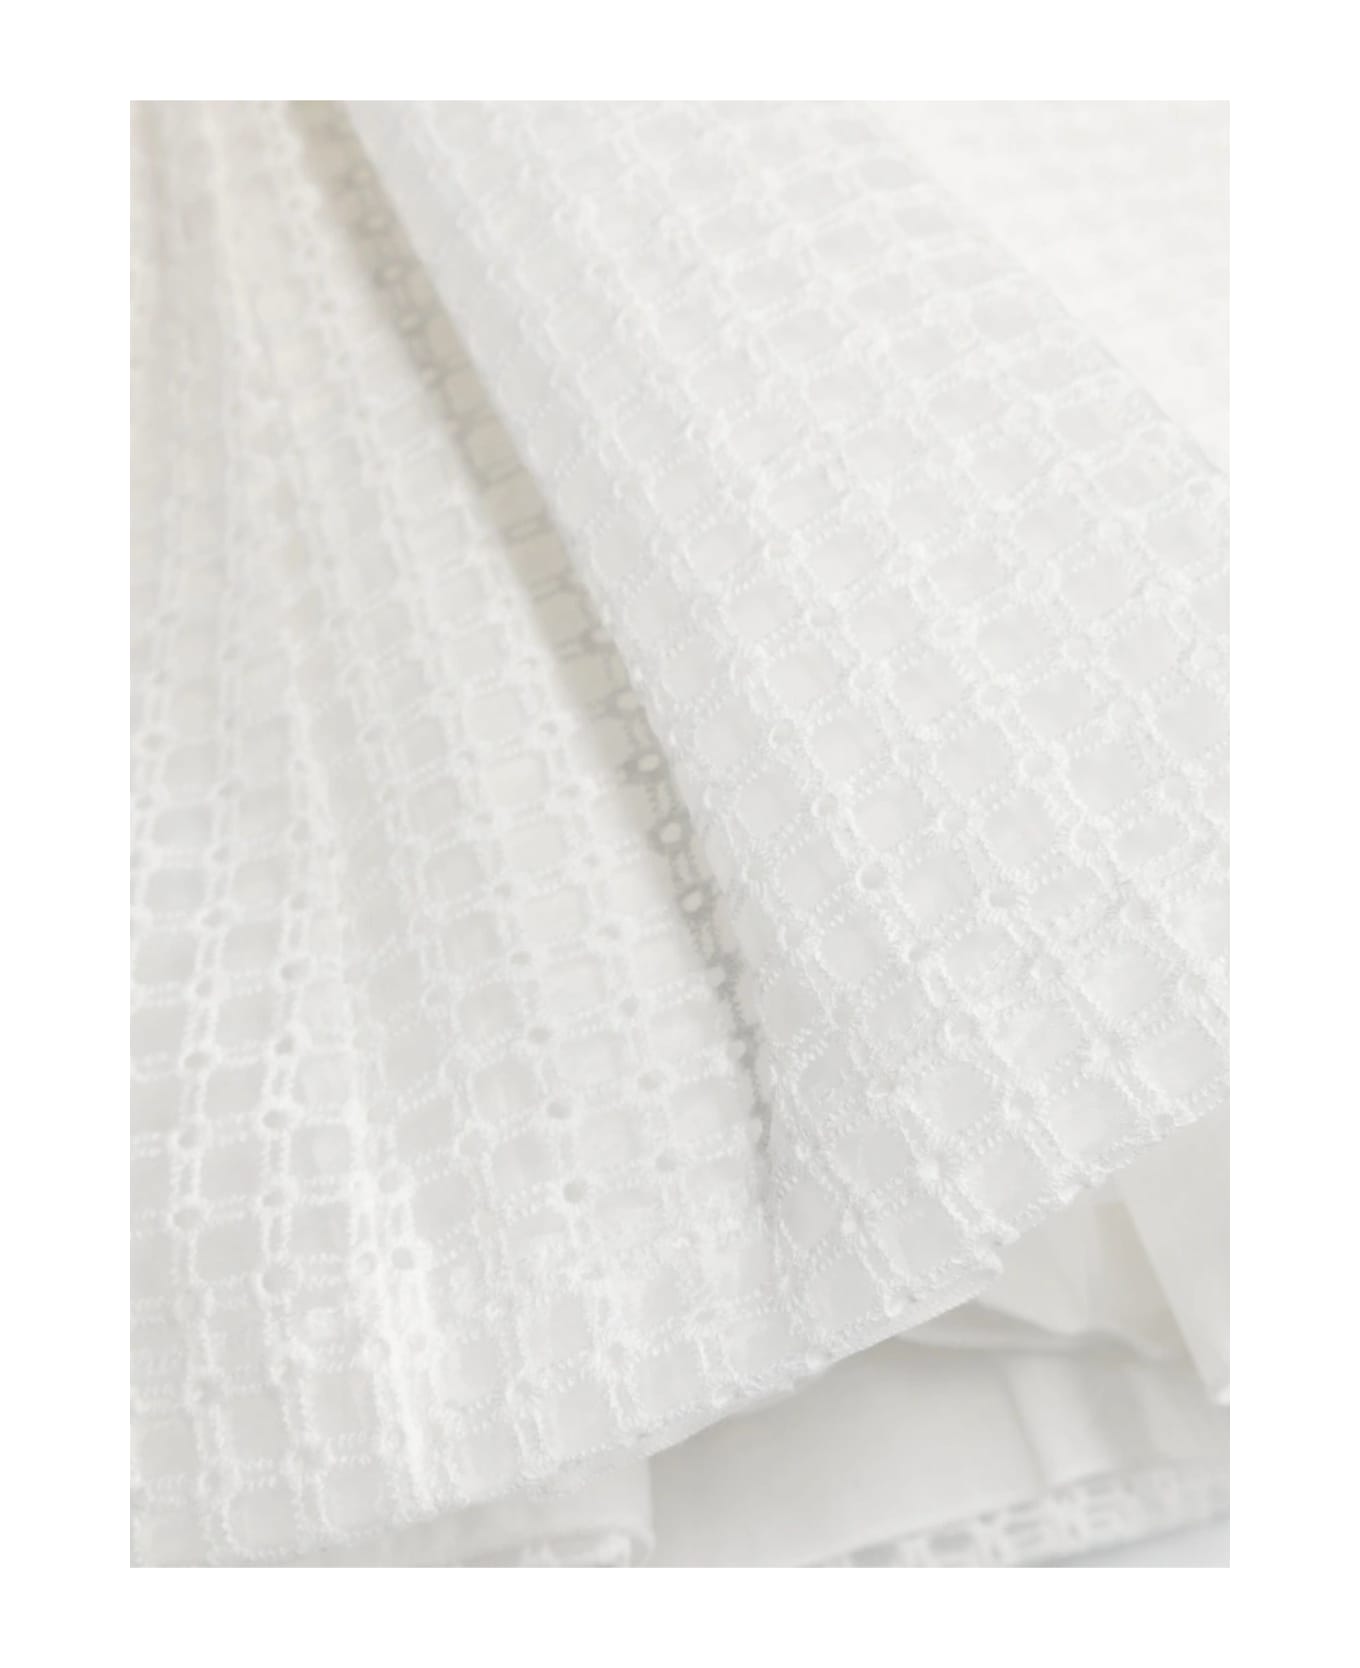 Simonetta Dresses White - White ワンピース＆ドレス